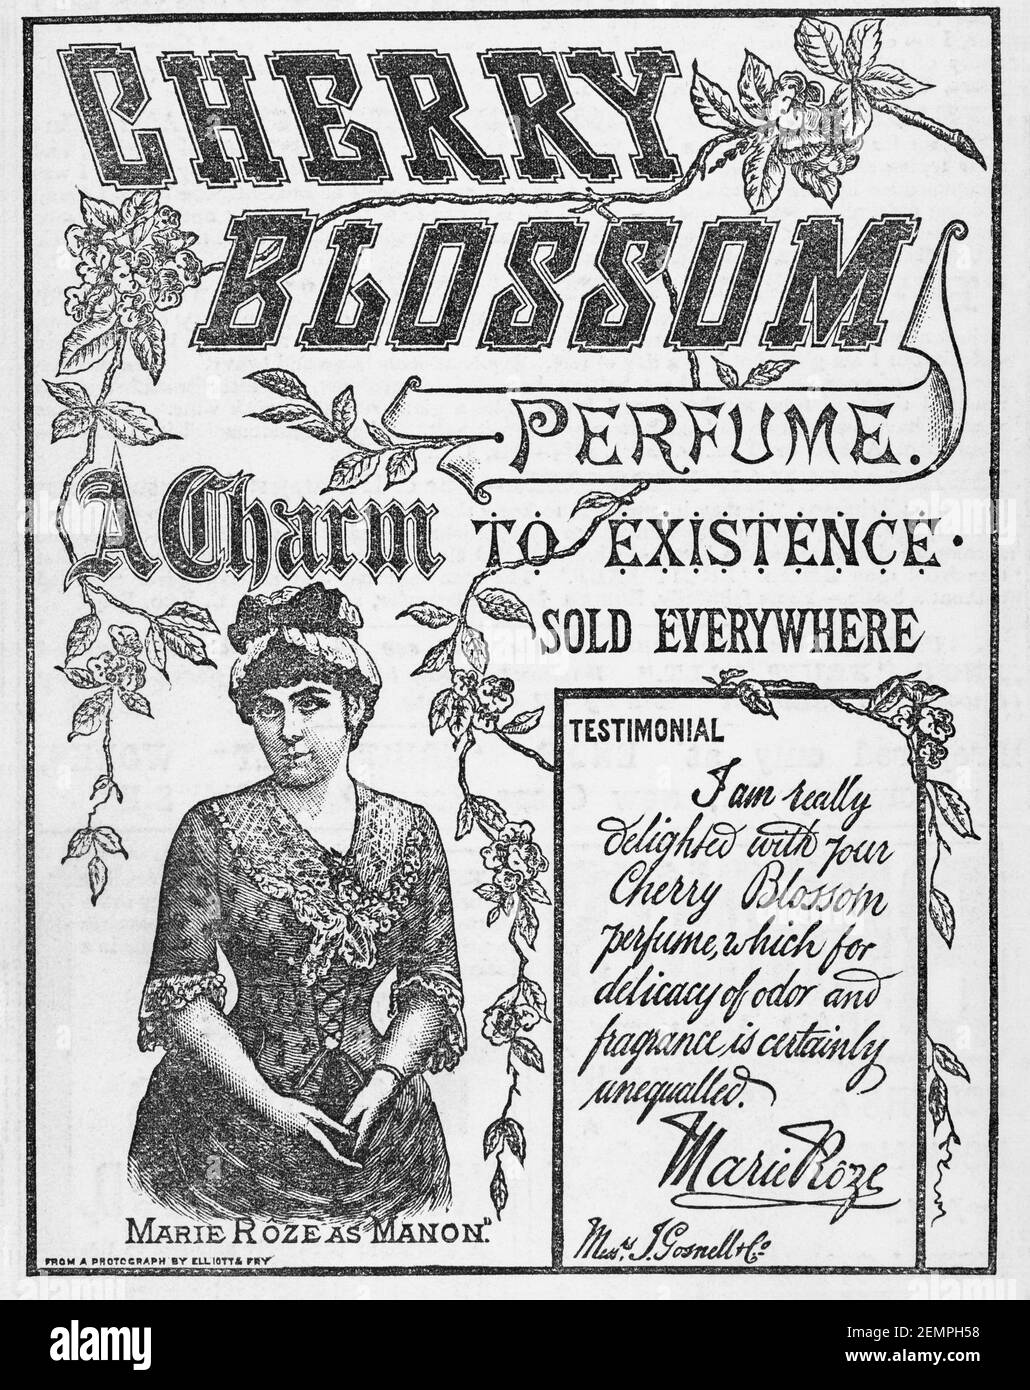 Vecchia rivista vittoriana giornale carta Cherry Blossom profumo pubblicità da 1887 - prima dell'alba degli standard pubblicitari. Storia del profumo. Foto Stock